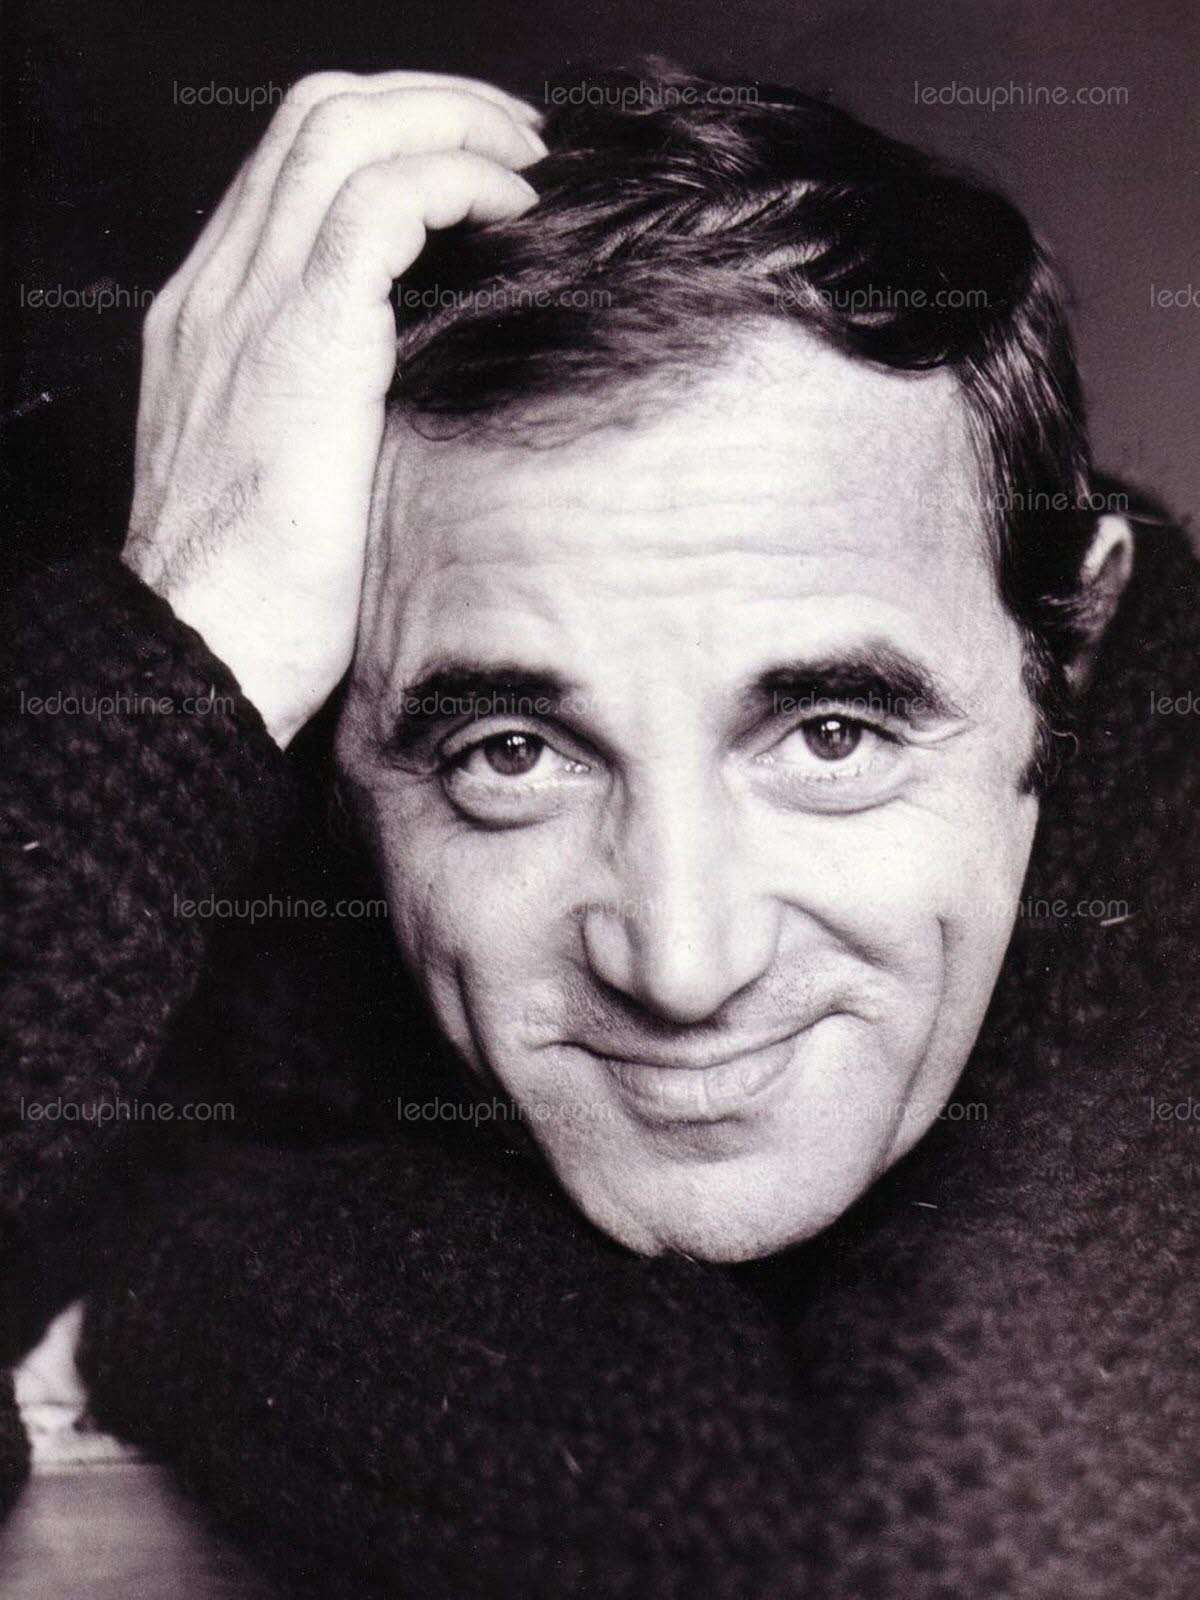 portrait noir et blanc CH. Aznavour chanteur intelligence-Atlaneastro